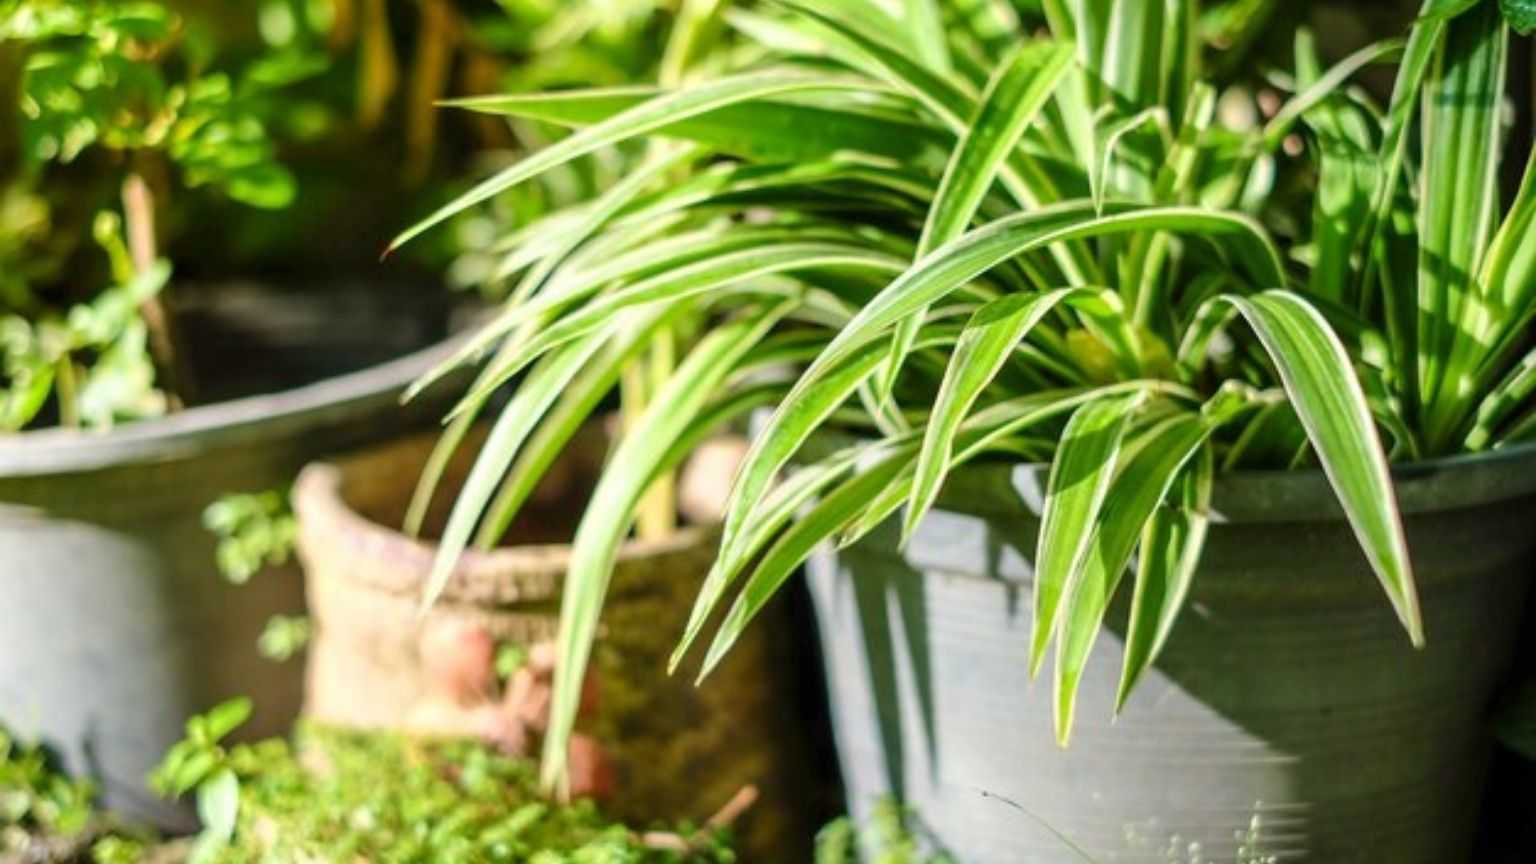 اگر آپ الرجی کا شکار ہیں تو ان پودوں کو گھر میں لگائیں اور جادو دیکھیں